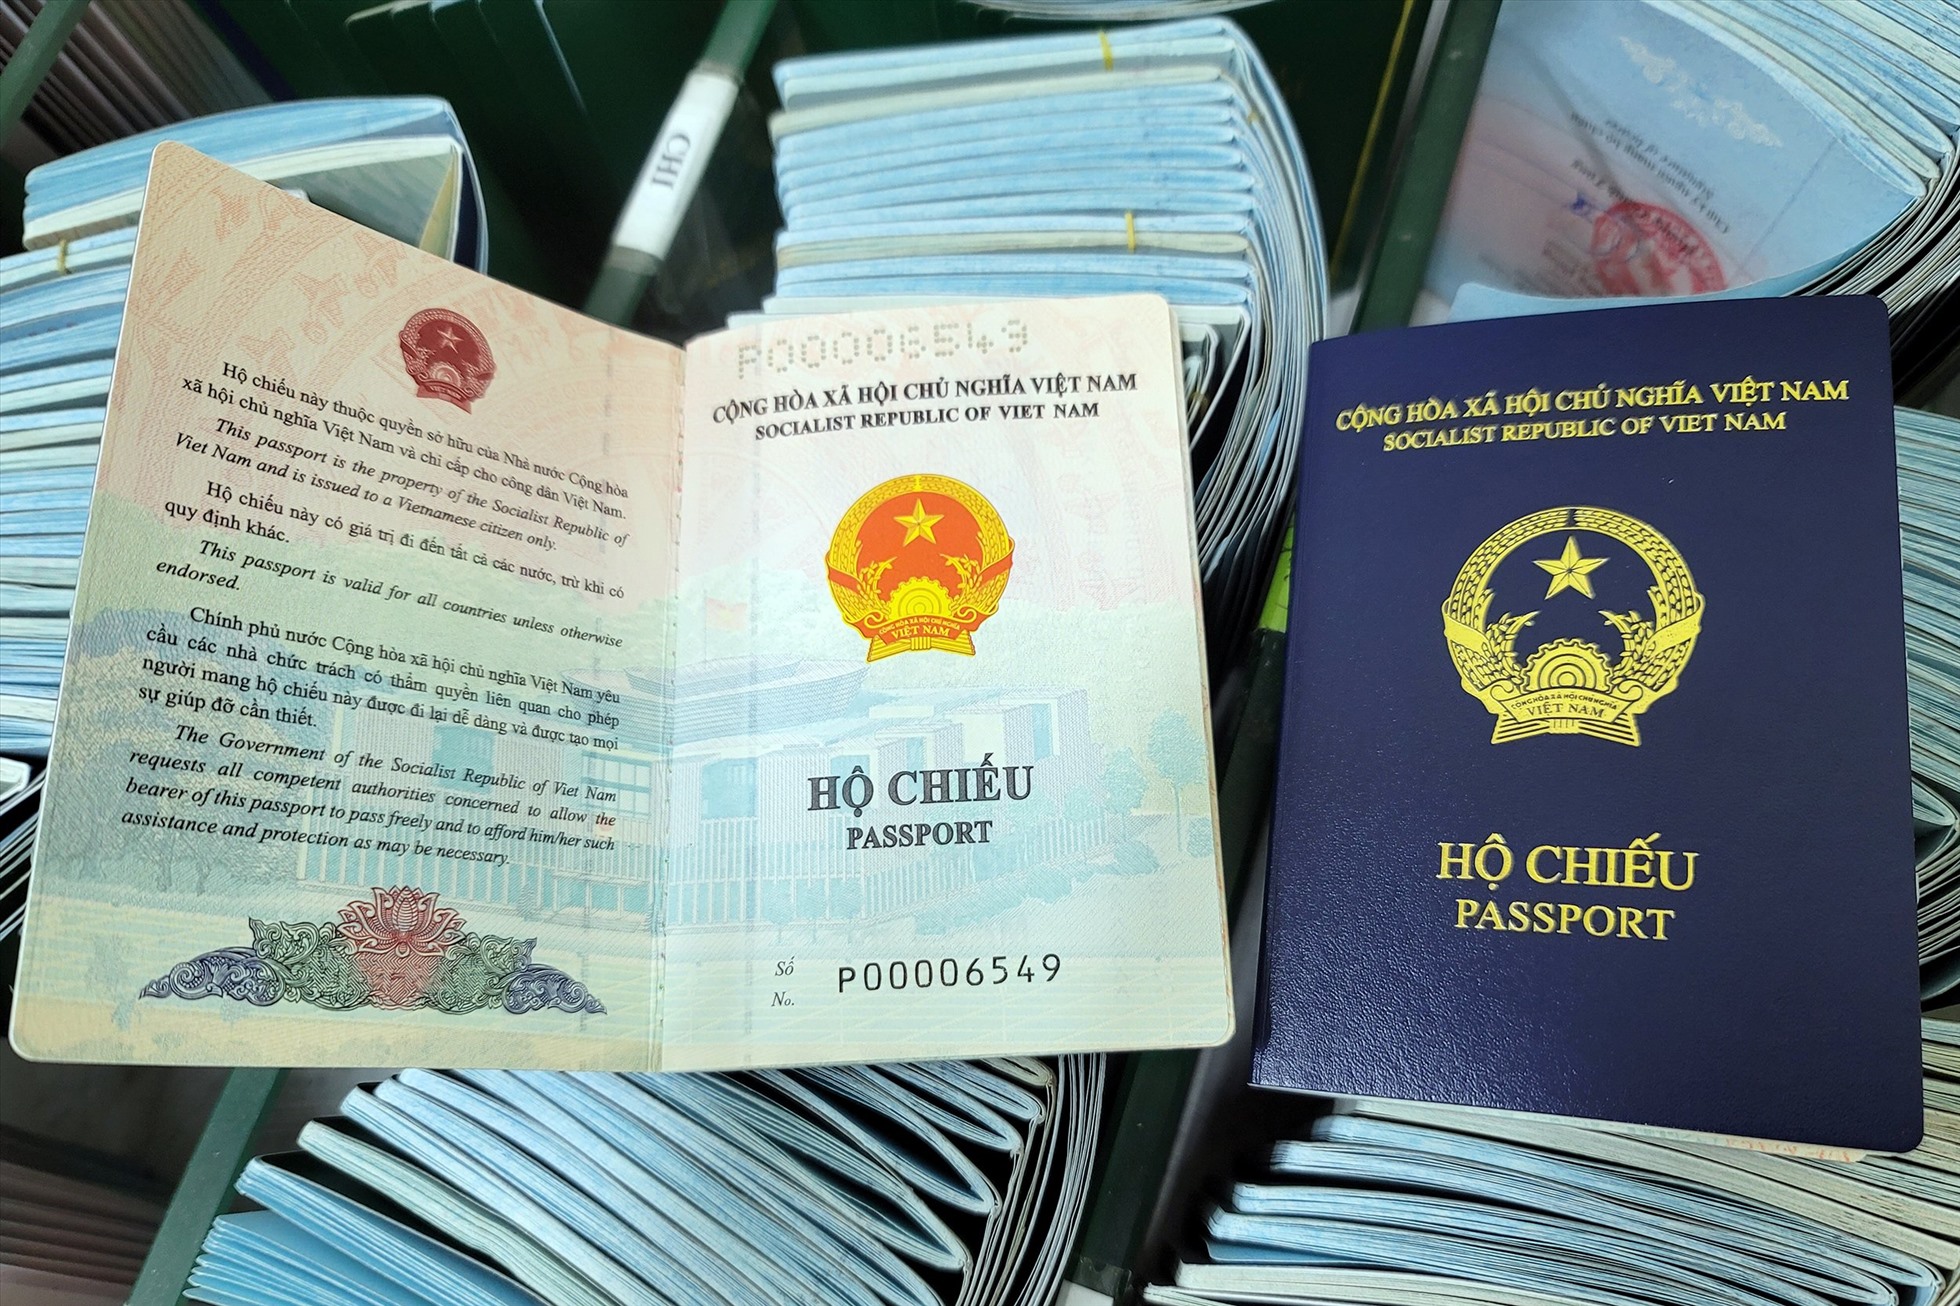 Hộ chiếu gắn chip điện tử - một đột phá về công nghệ để đảm bảo người dân Việt Nam đi du lịch nước ngoài an toàn và thuận tiện hơn bao giờ hết. Hãy cùng tìm hiểu về hộ chiếu này thông qua hình ảnh để đón nhận tương lai đầy màu sắc trên những chuyến đi.